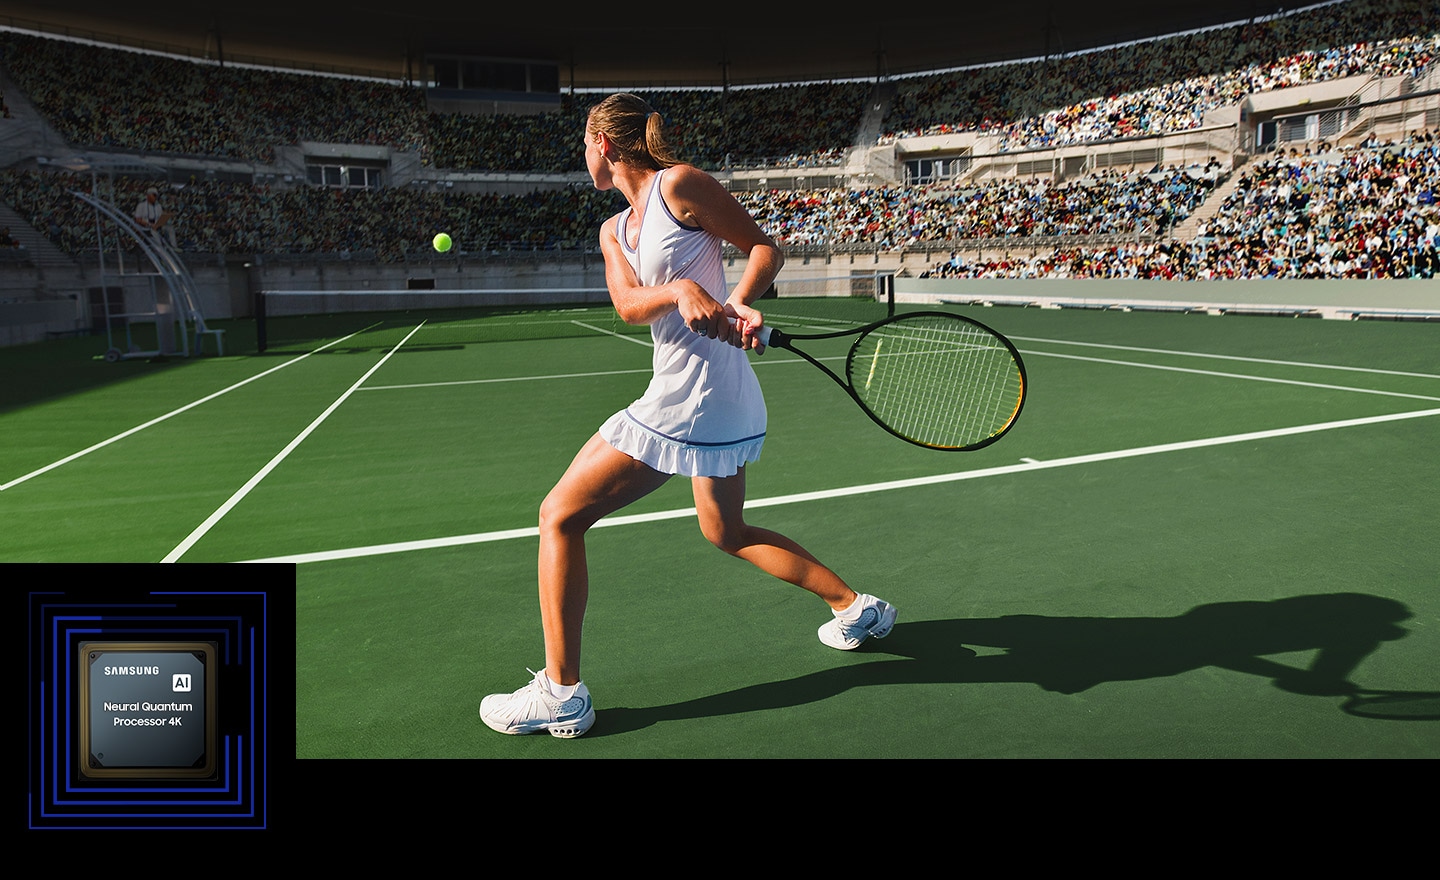 O femeie joaca tenis in fata unei multimi mari.  Procesorul Neural Quantum 4K este afisat in coltul din stanga jos.